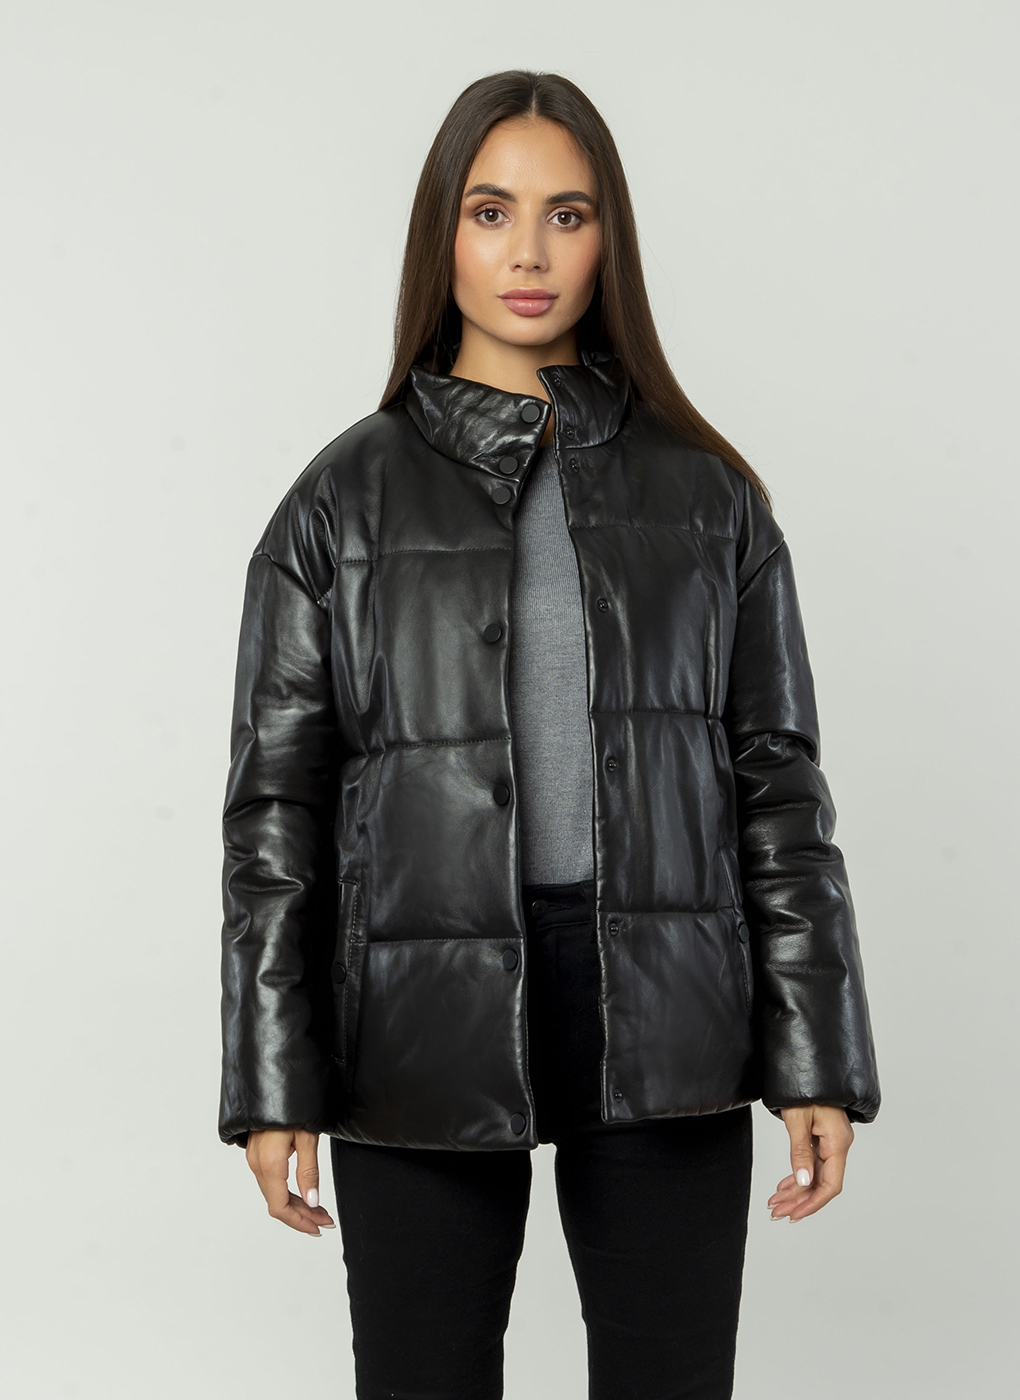 Кожаная куртка женская Каляев 1659781 черная 52 RU